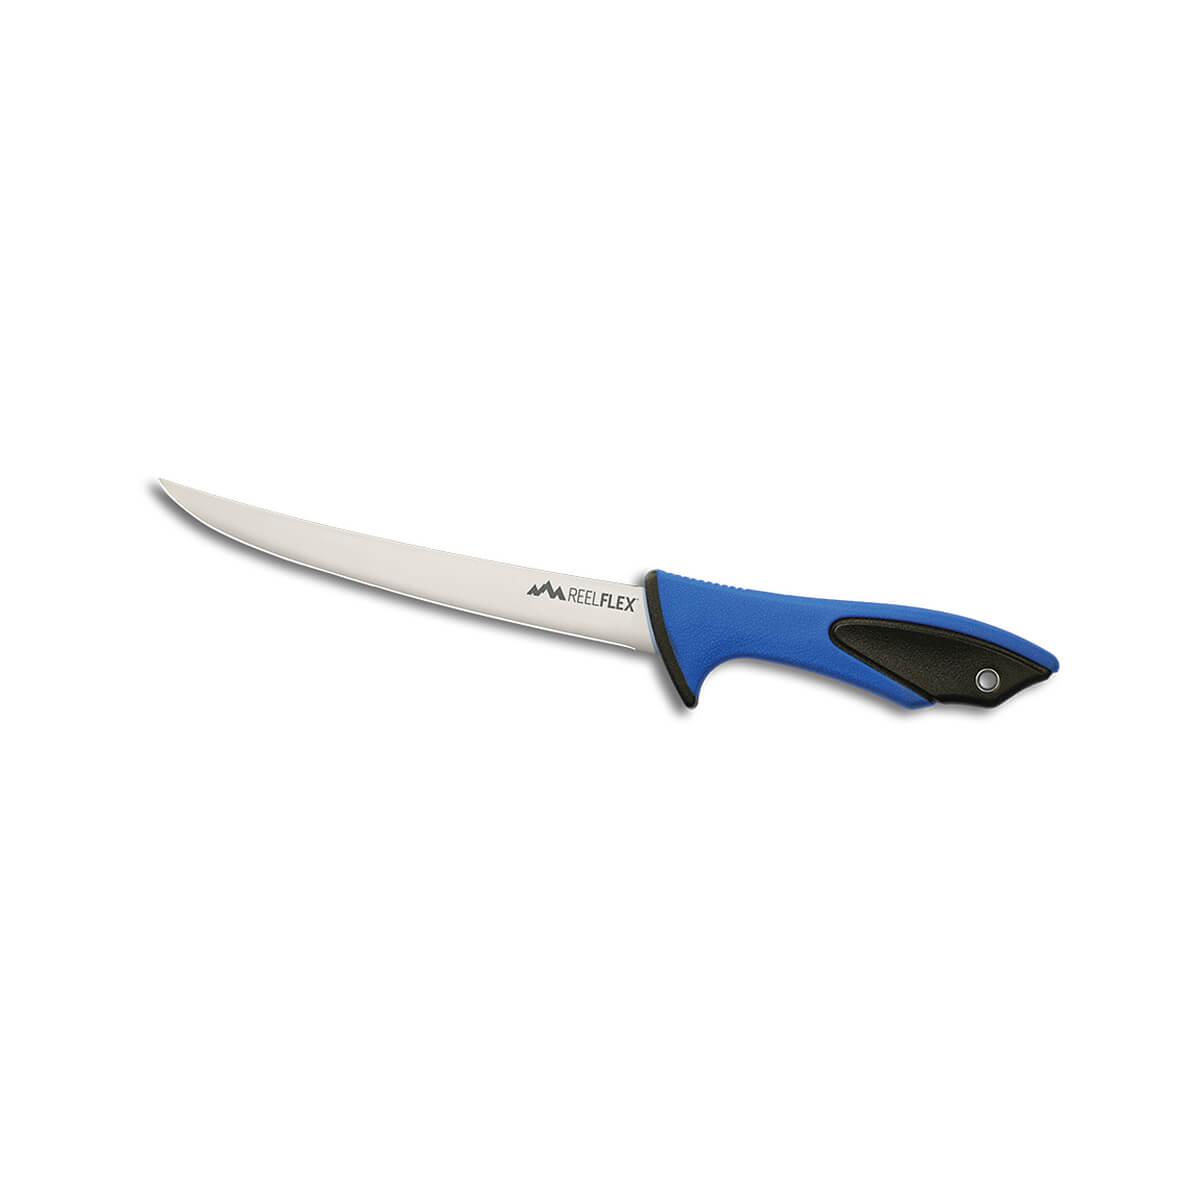  Reel- Flex 7.5 Inch Fillet Knife